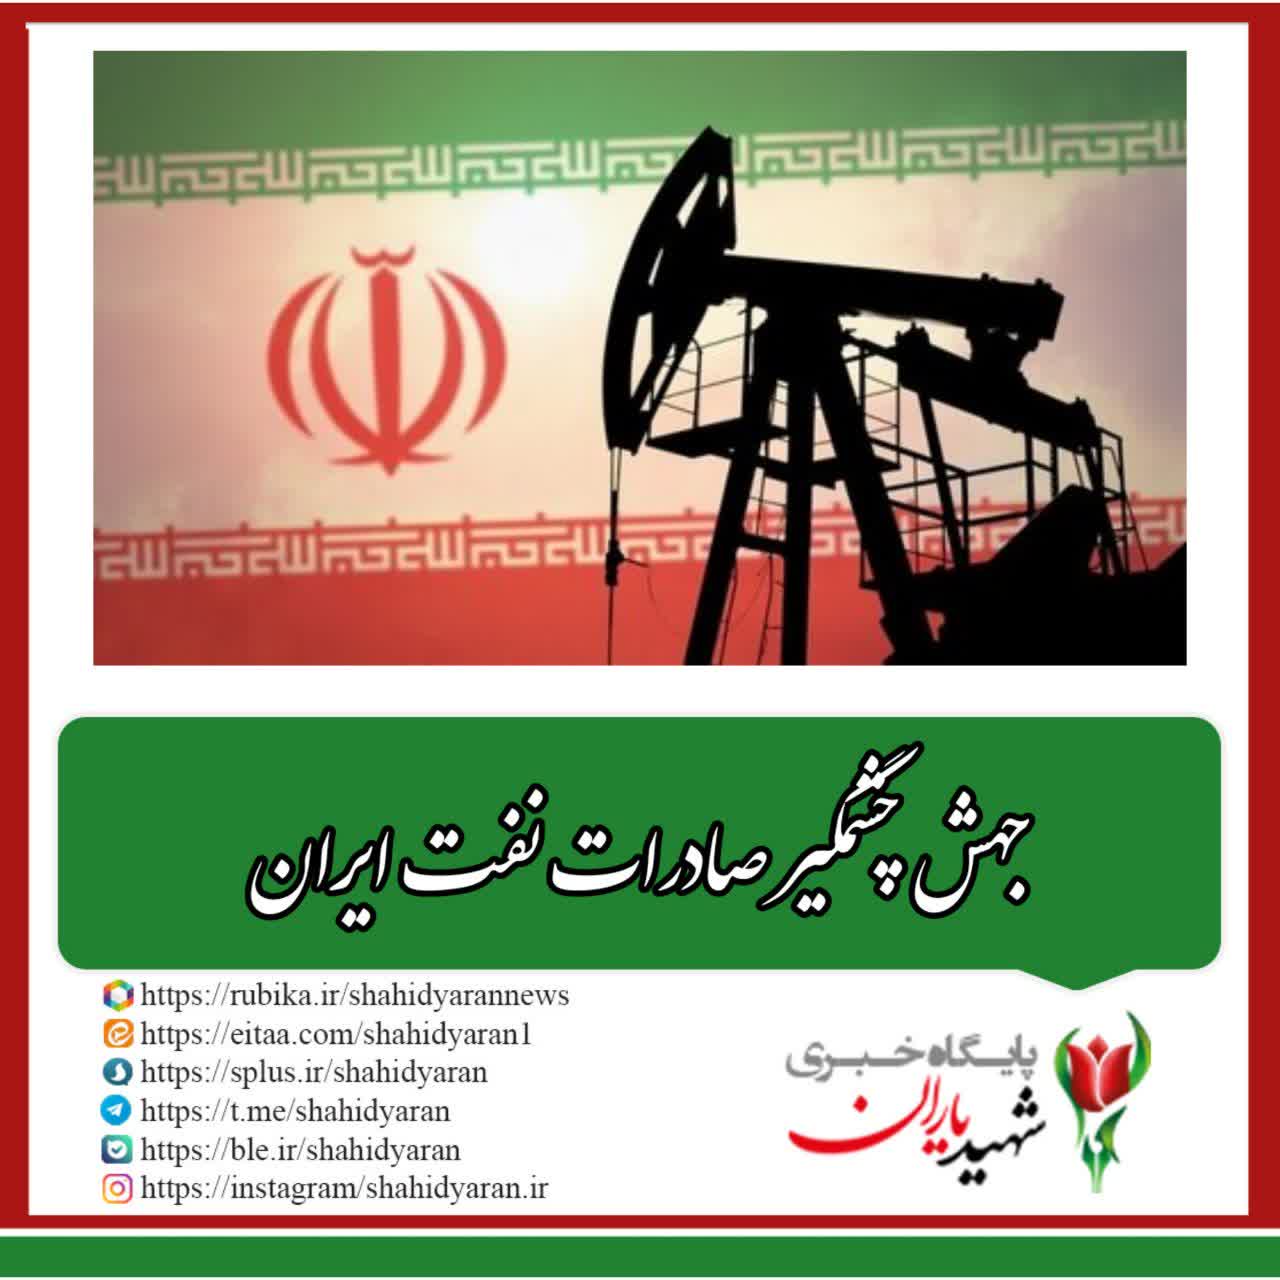 بلومبرگ گزارش داد؛ جهش چشمگیر صادرات نفت ایران